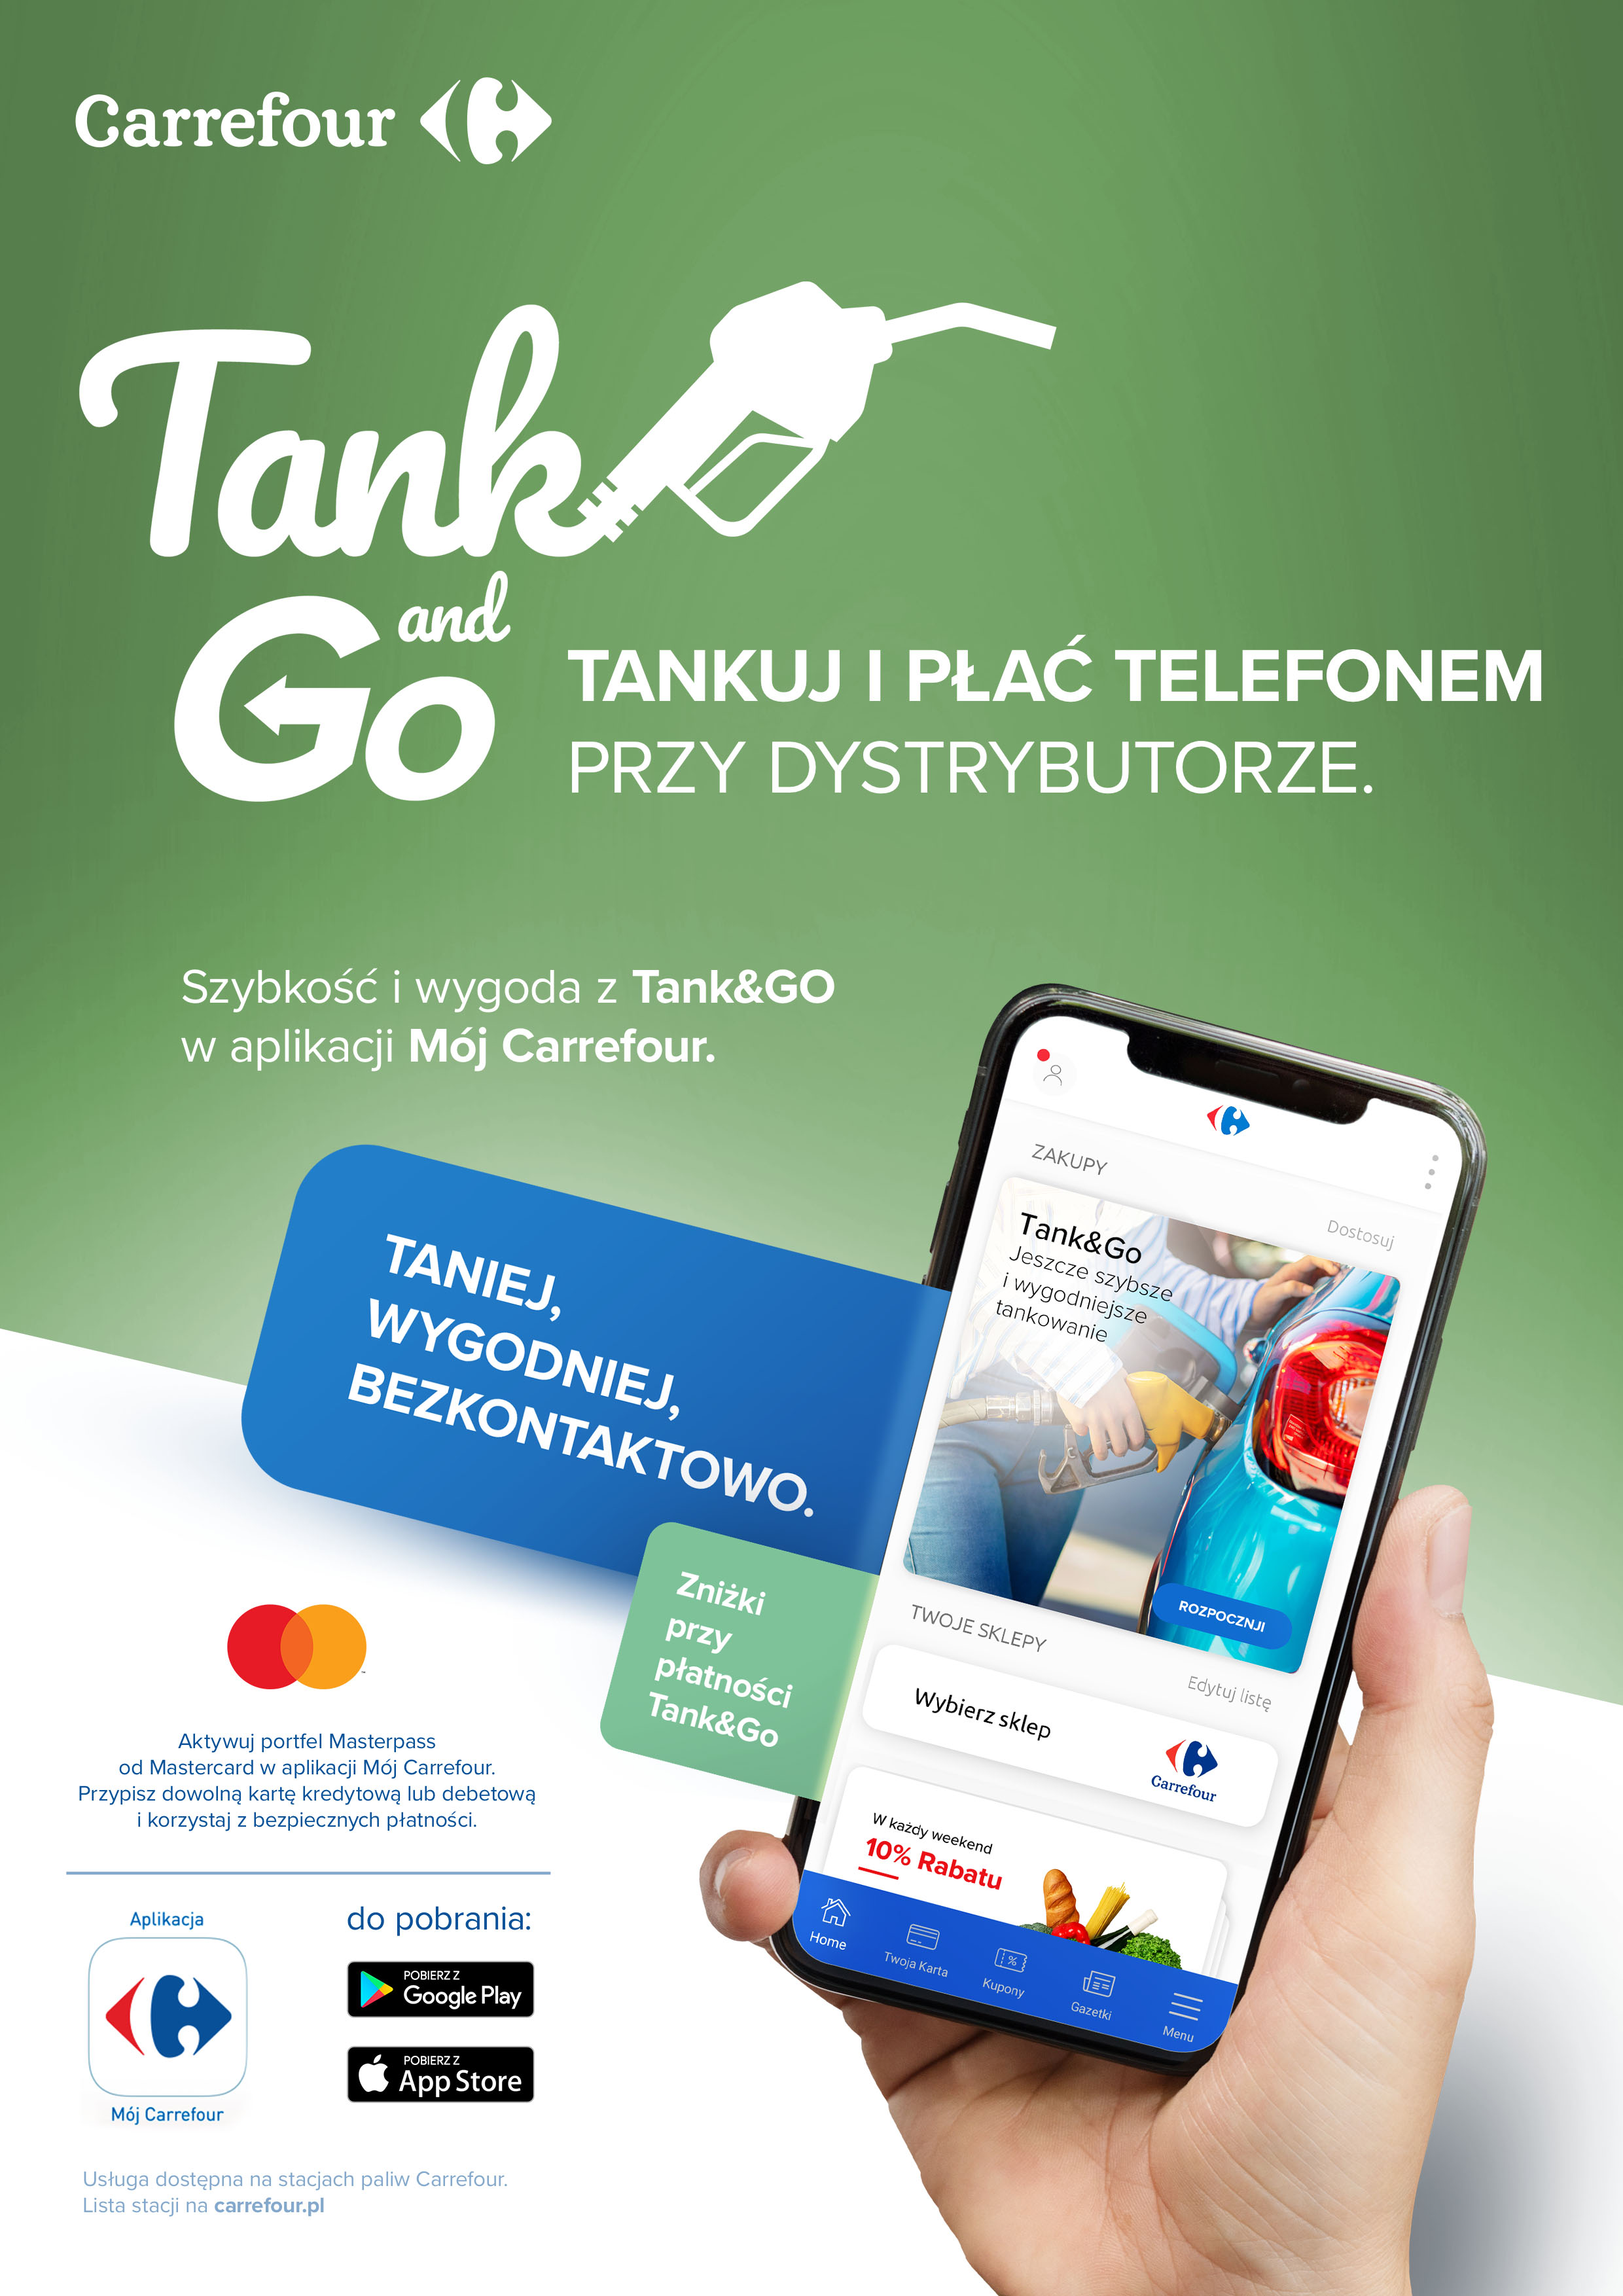 Carrefour Polska uruchamia nową usługę Tank&Go